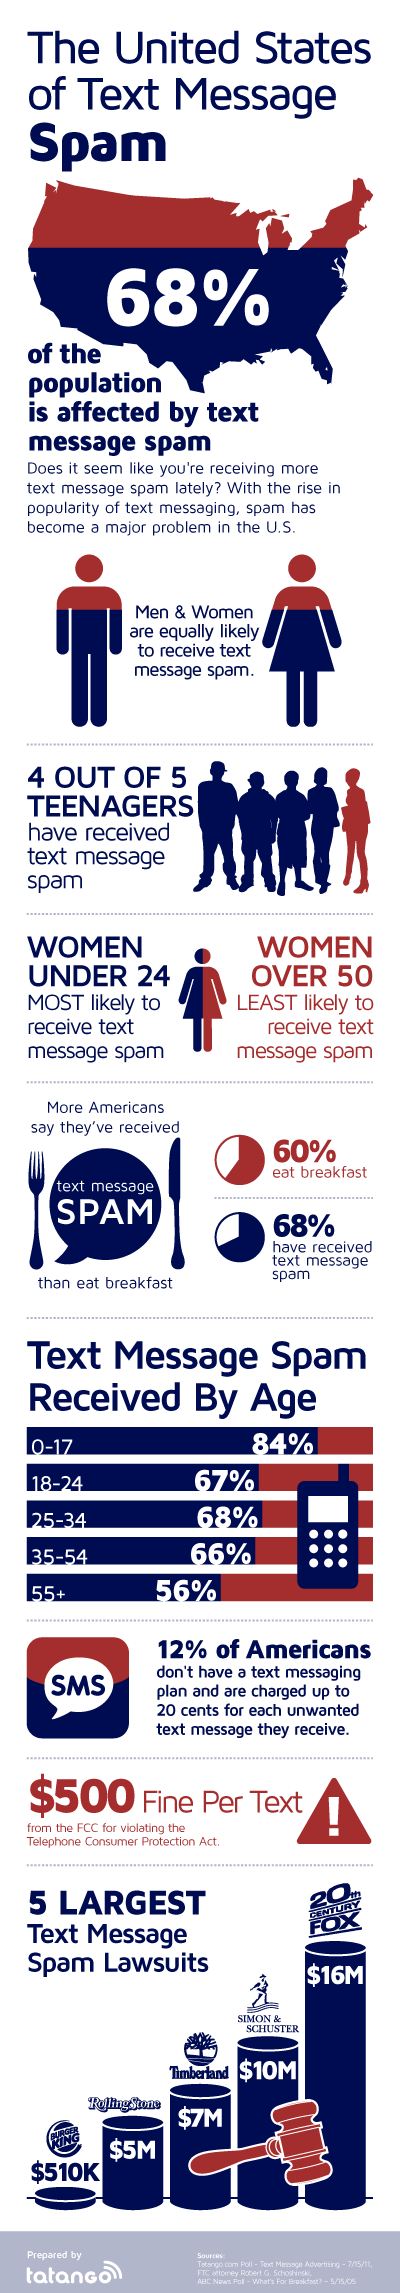 Mensajes de spam en Estados Unidos